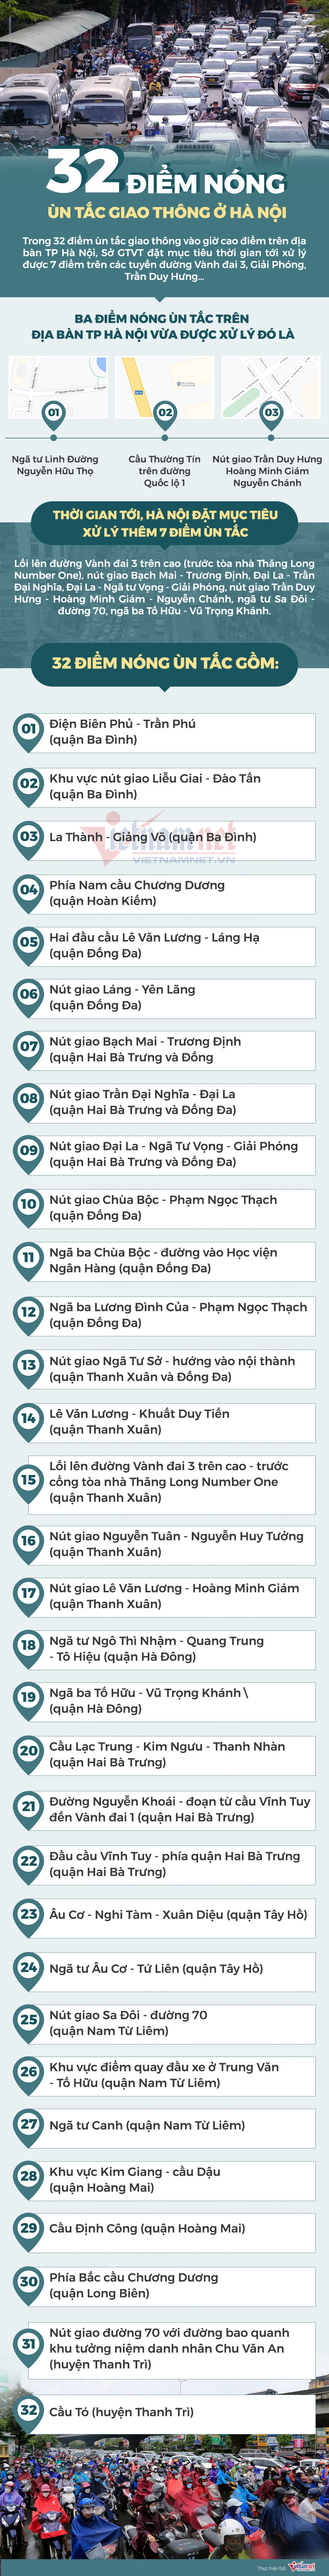 Giám đốc Sở GTVT thị sát các điểm ùn tắc, Hà Nội có bớt kẹt xe?